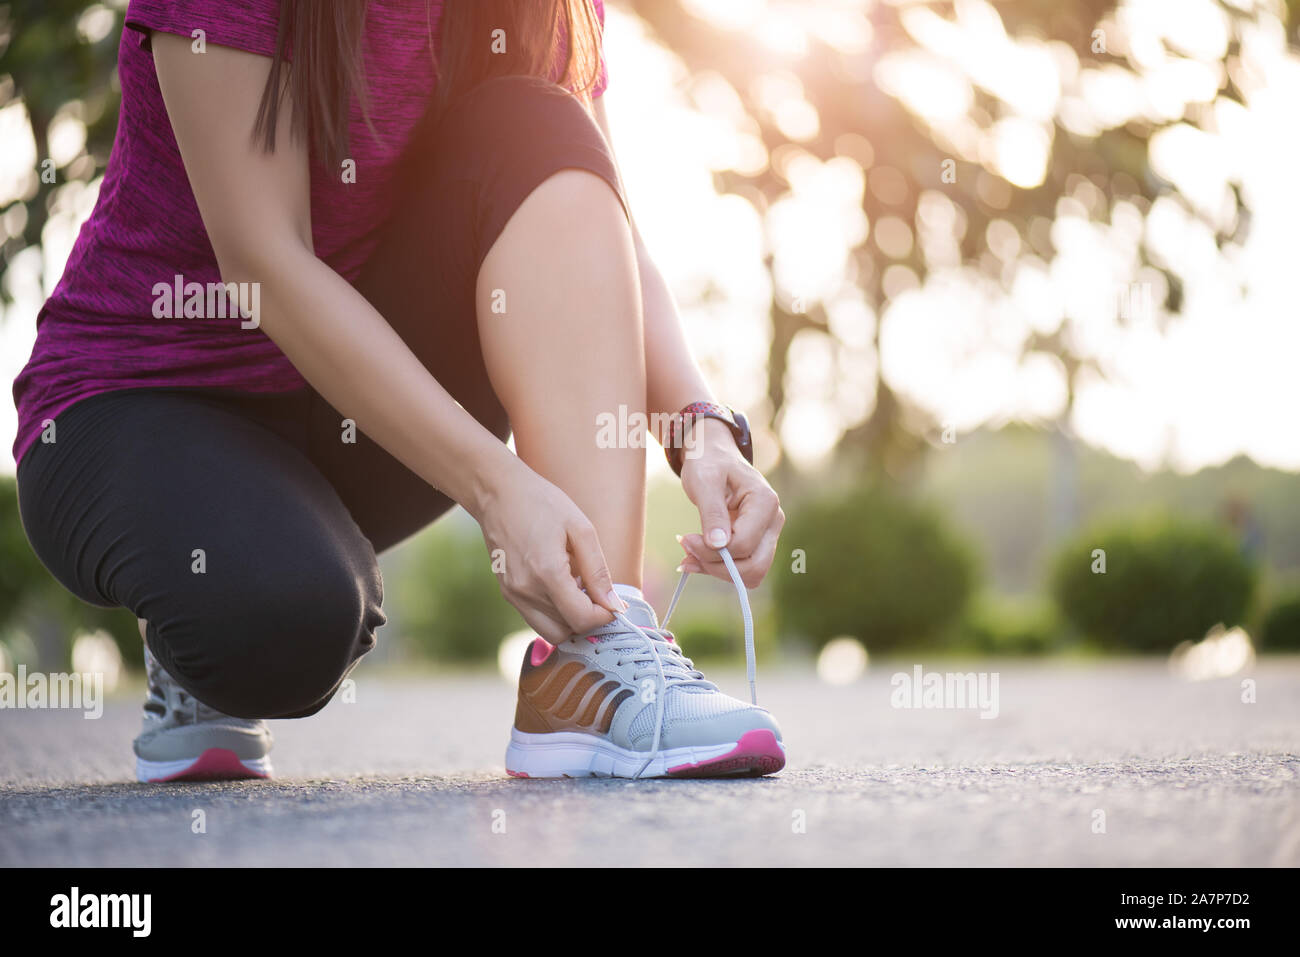 Zapatillas de correr: mujer que ata los cordones de los zapatos, un  corredor deportivo que se prepara para correr en el jardín.